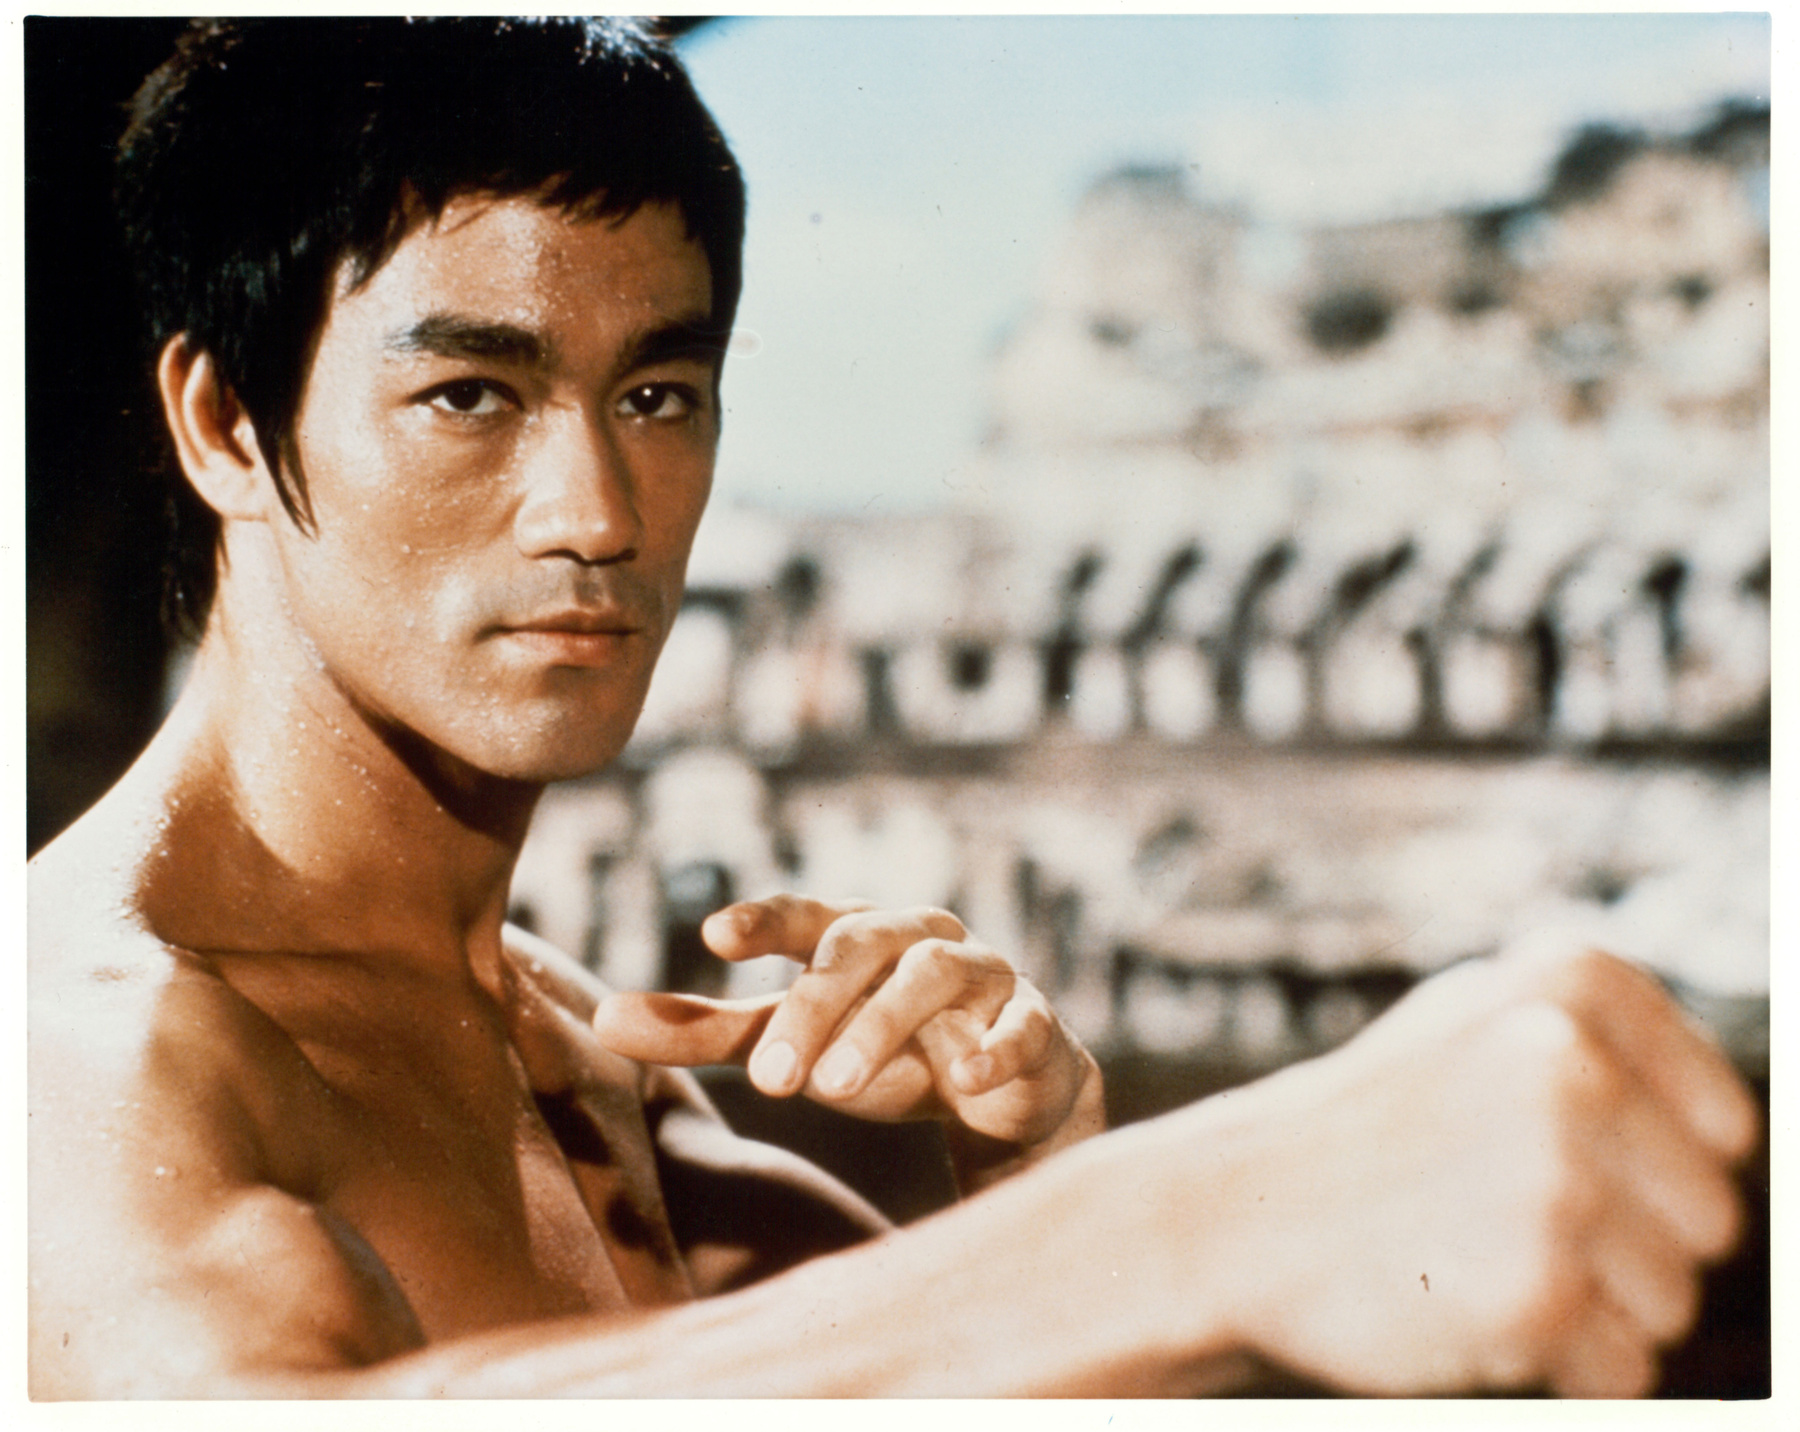 Ugyanez a film, de egy teljesen másik arca Bruce Lee-nek